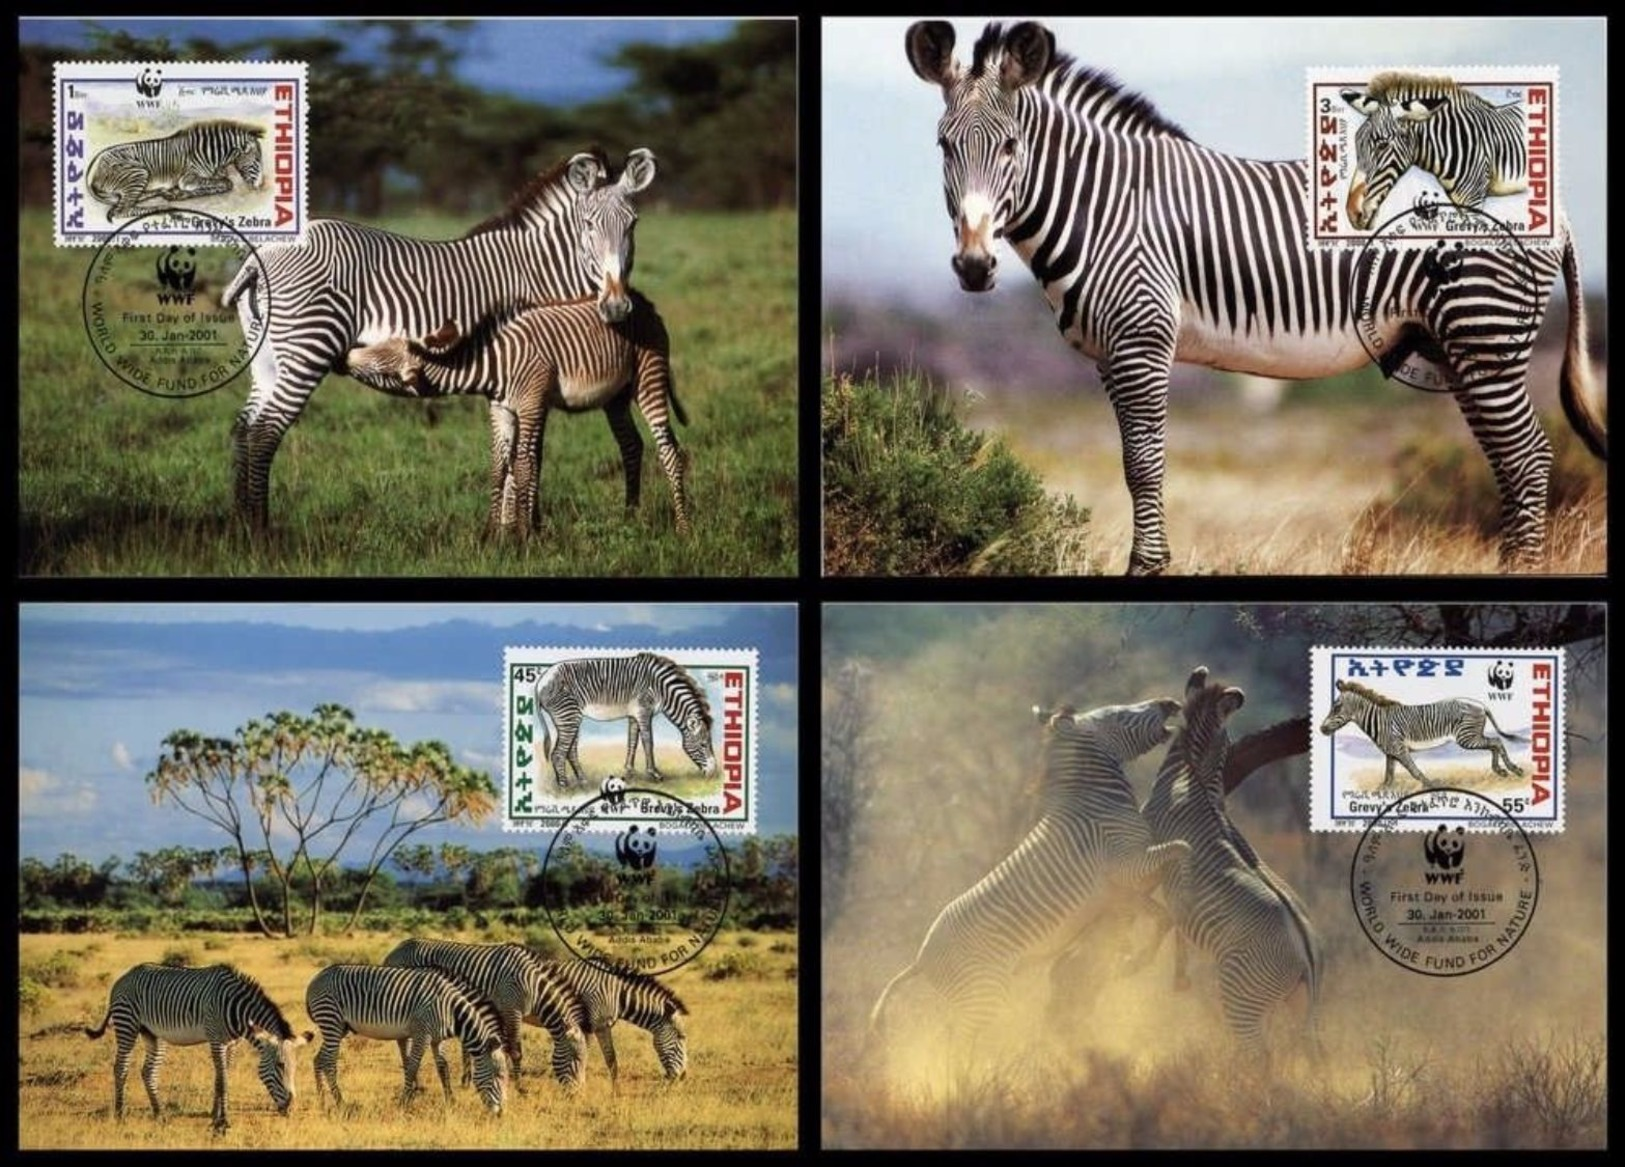 WWF Ethiopia Ethiopie Äthiopien Grevy´s Zebra Grevyzebra Zebre 2001 CM MC MK Maxi Card Carte Maximum Maxicards - Maximum Cards